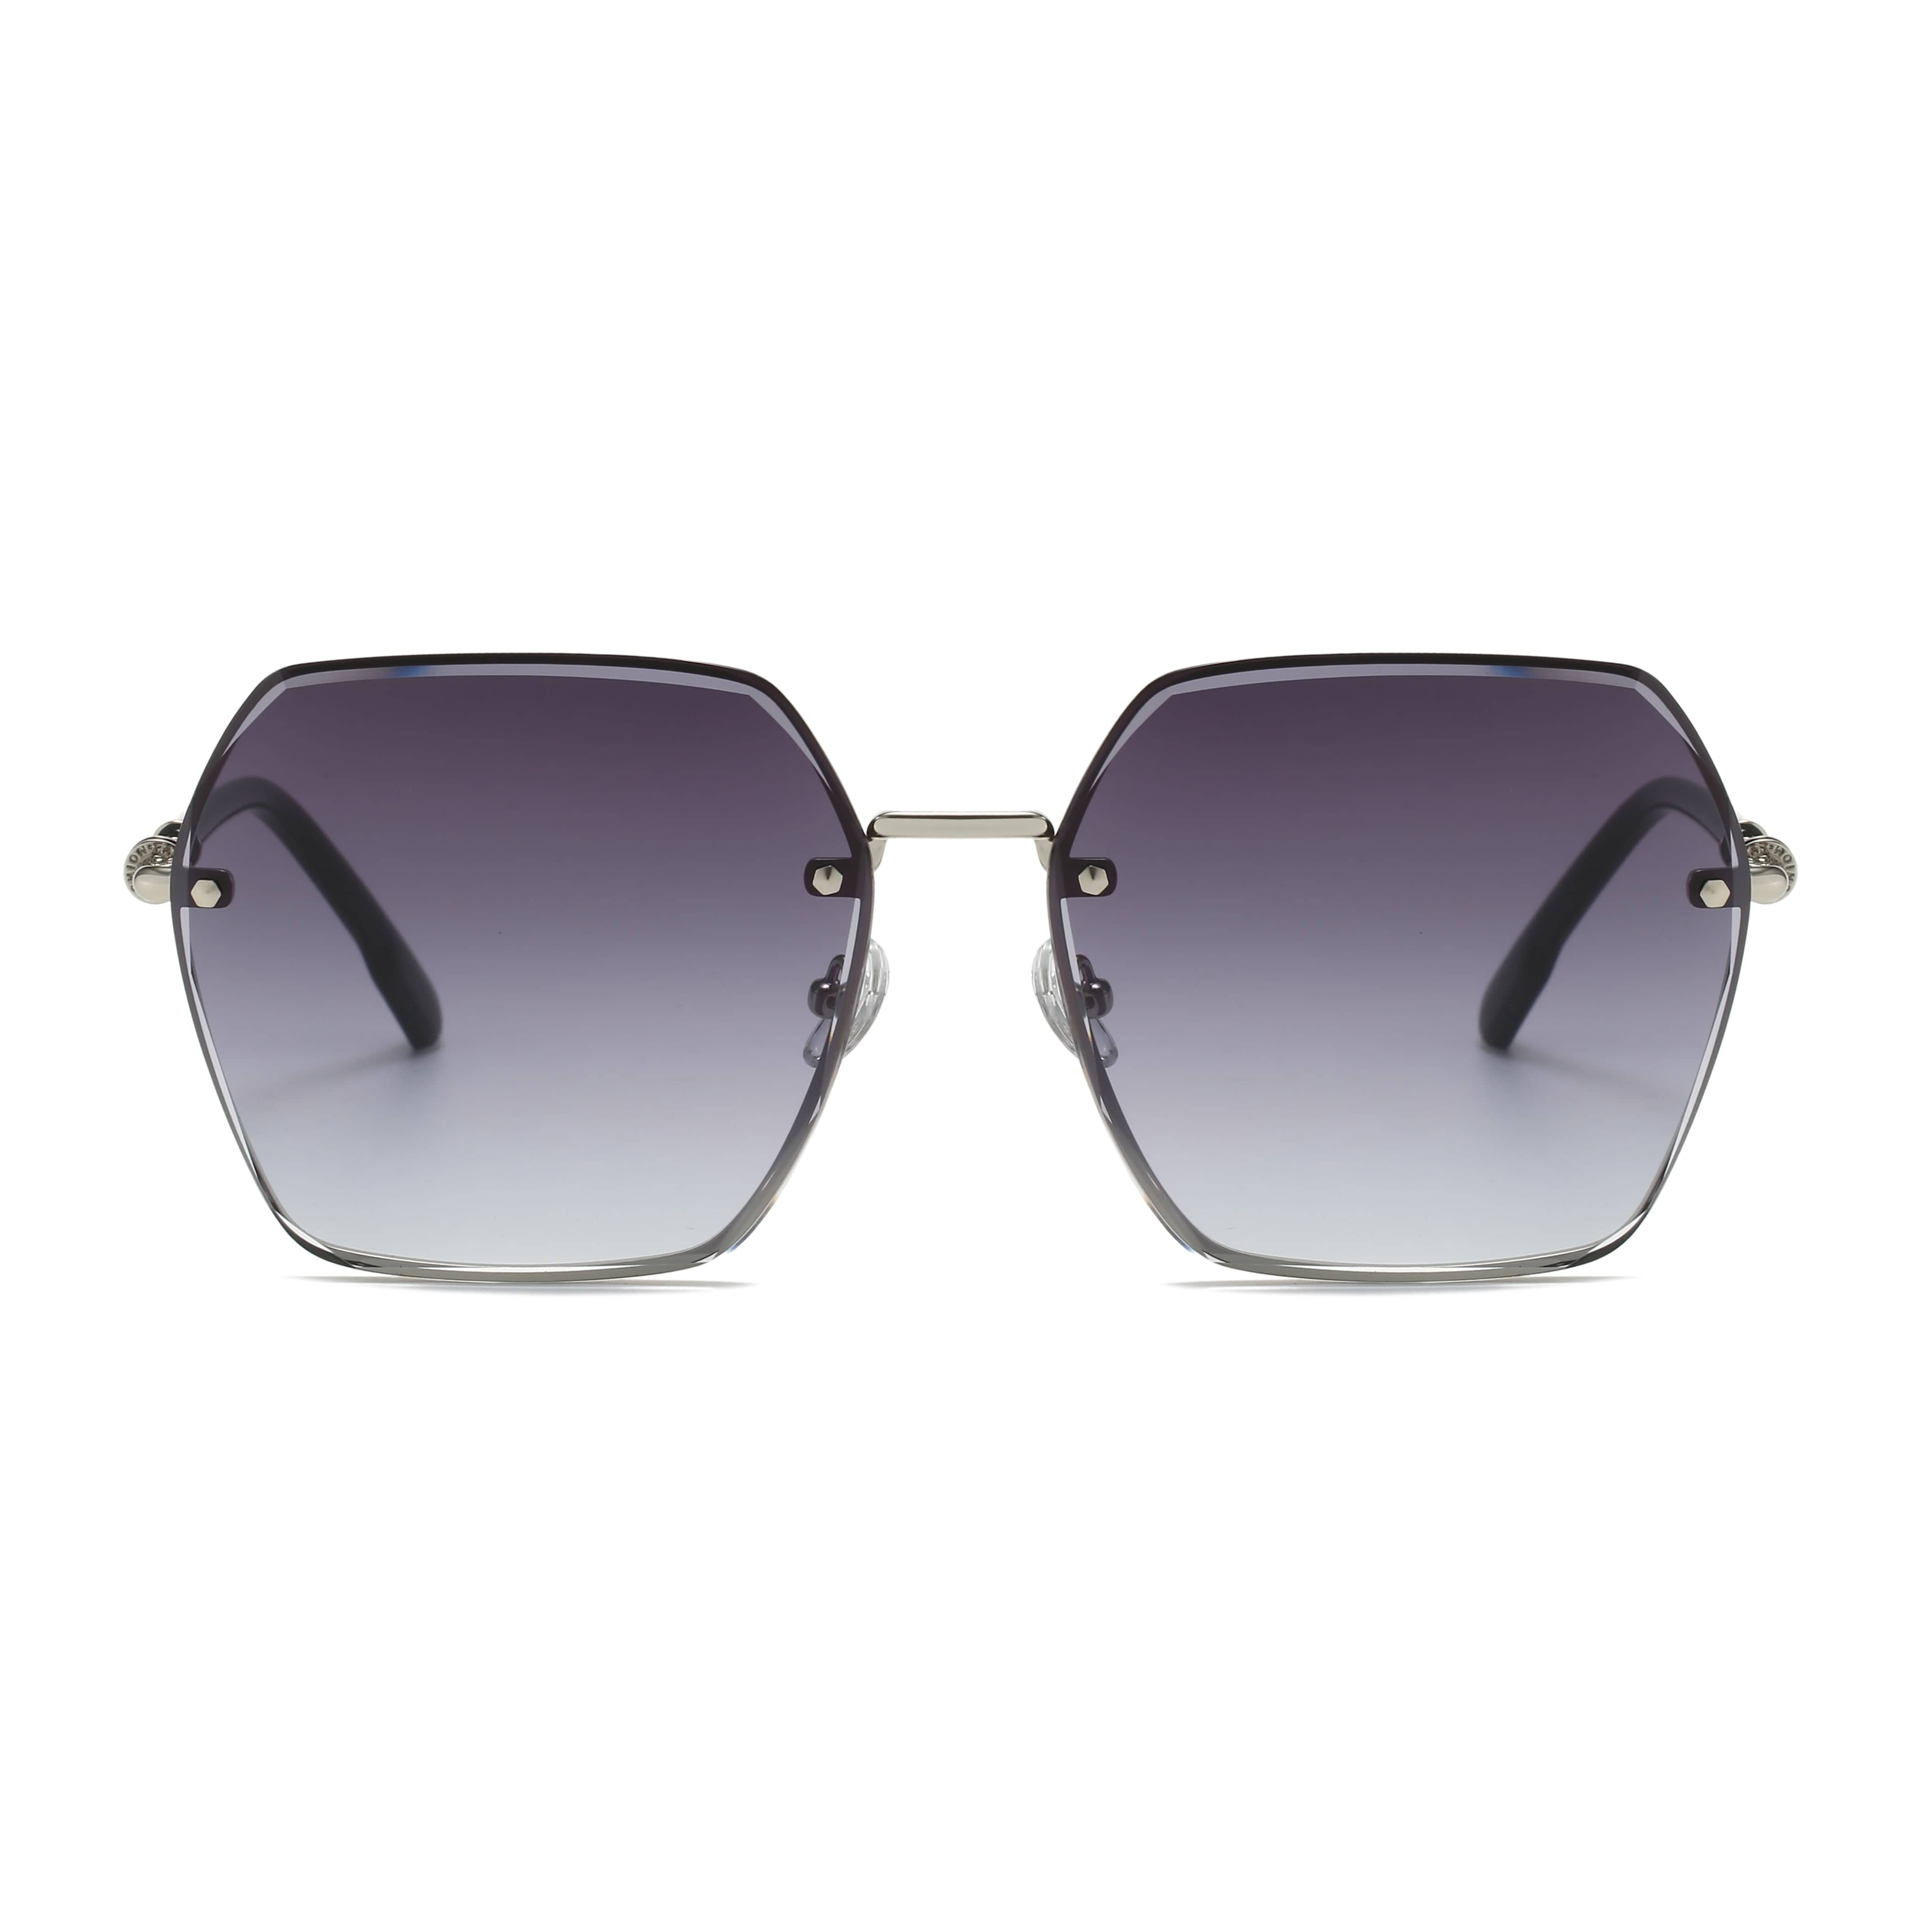 GIUSTIZIERI VECCHI Sunglasses Medium / Purple Grey DeluxeDiva Uno